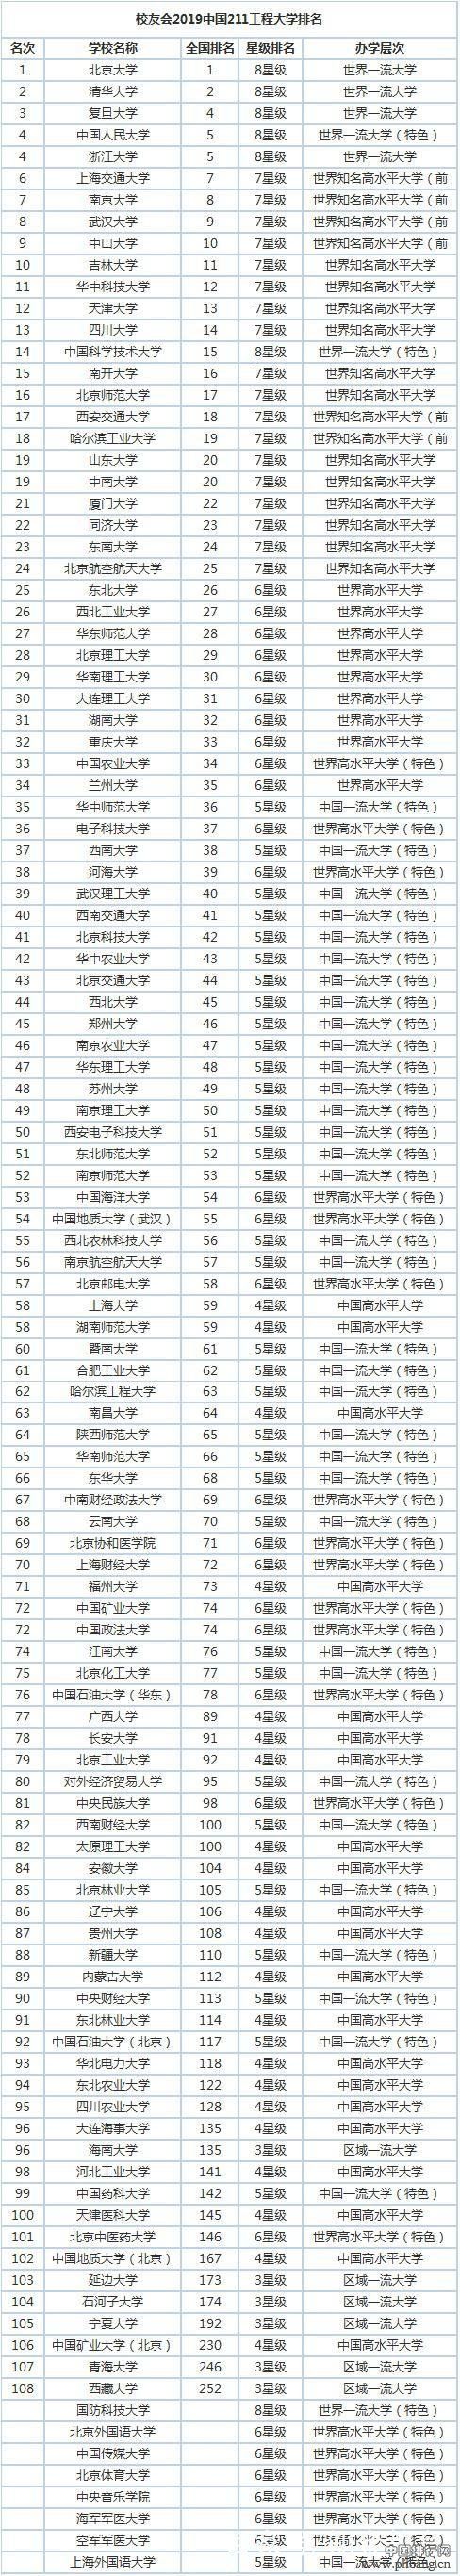 211高校排行榜_2019中国211、非211工程大学百强排行榜,北大、国科大分列